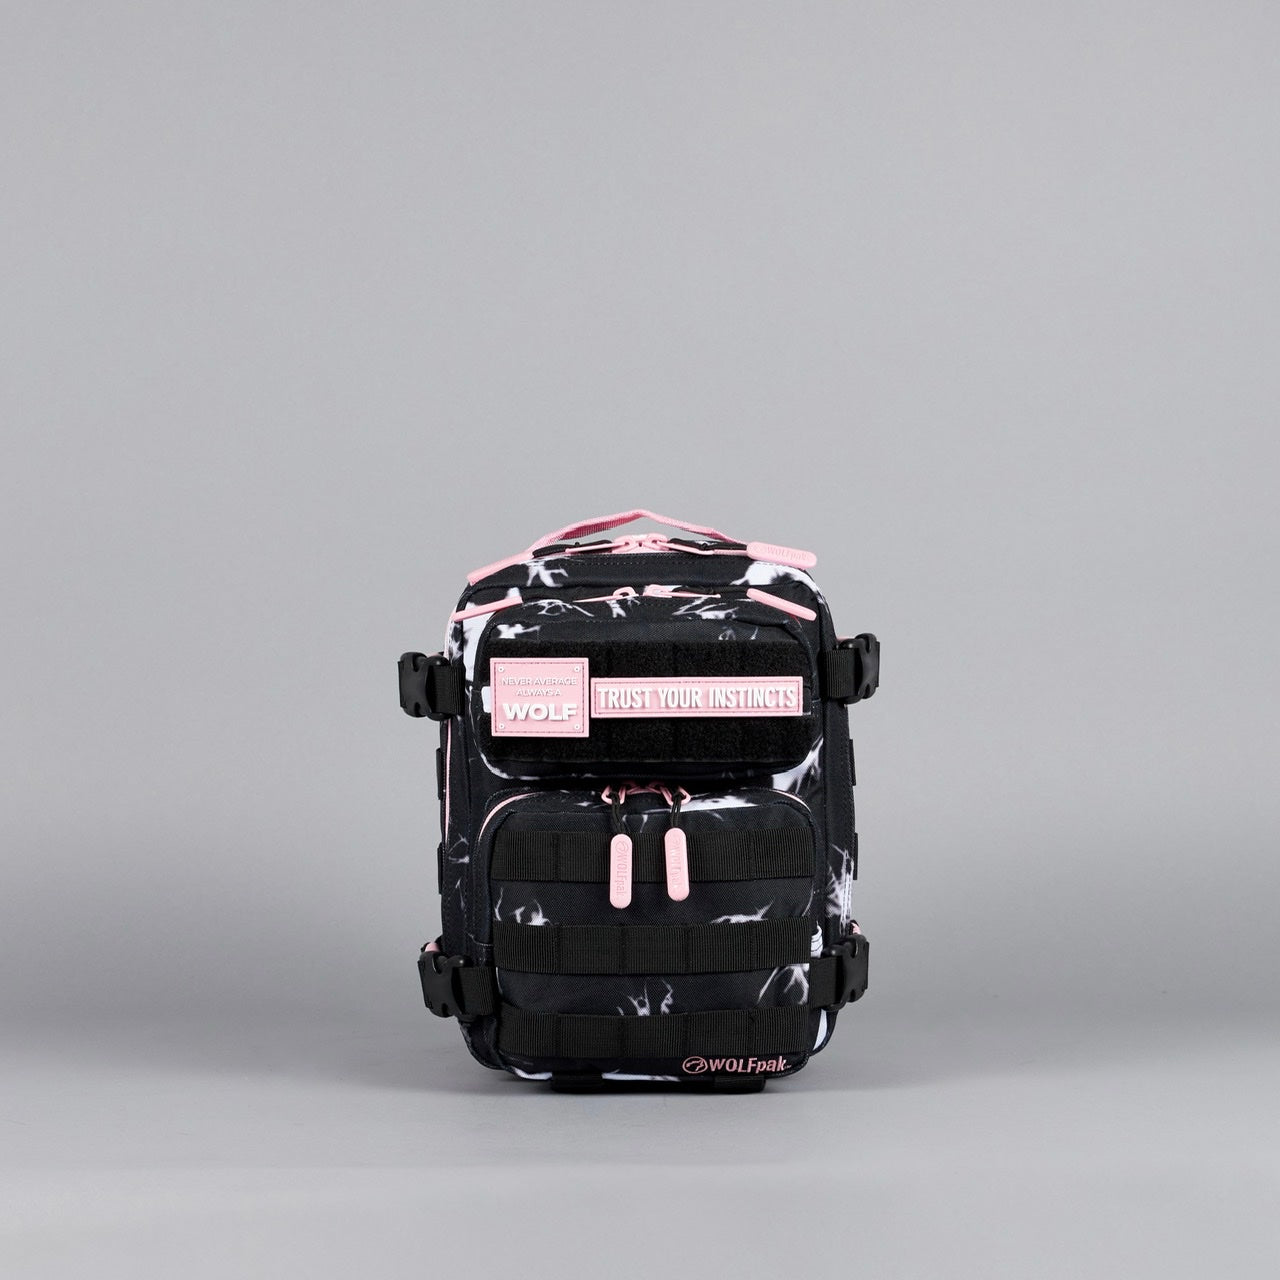 9L Backpack Mini Black Lightning Knockout Pink